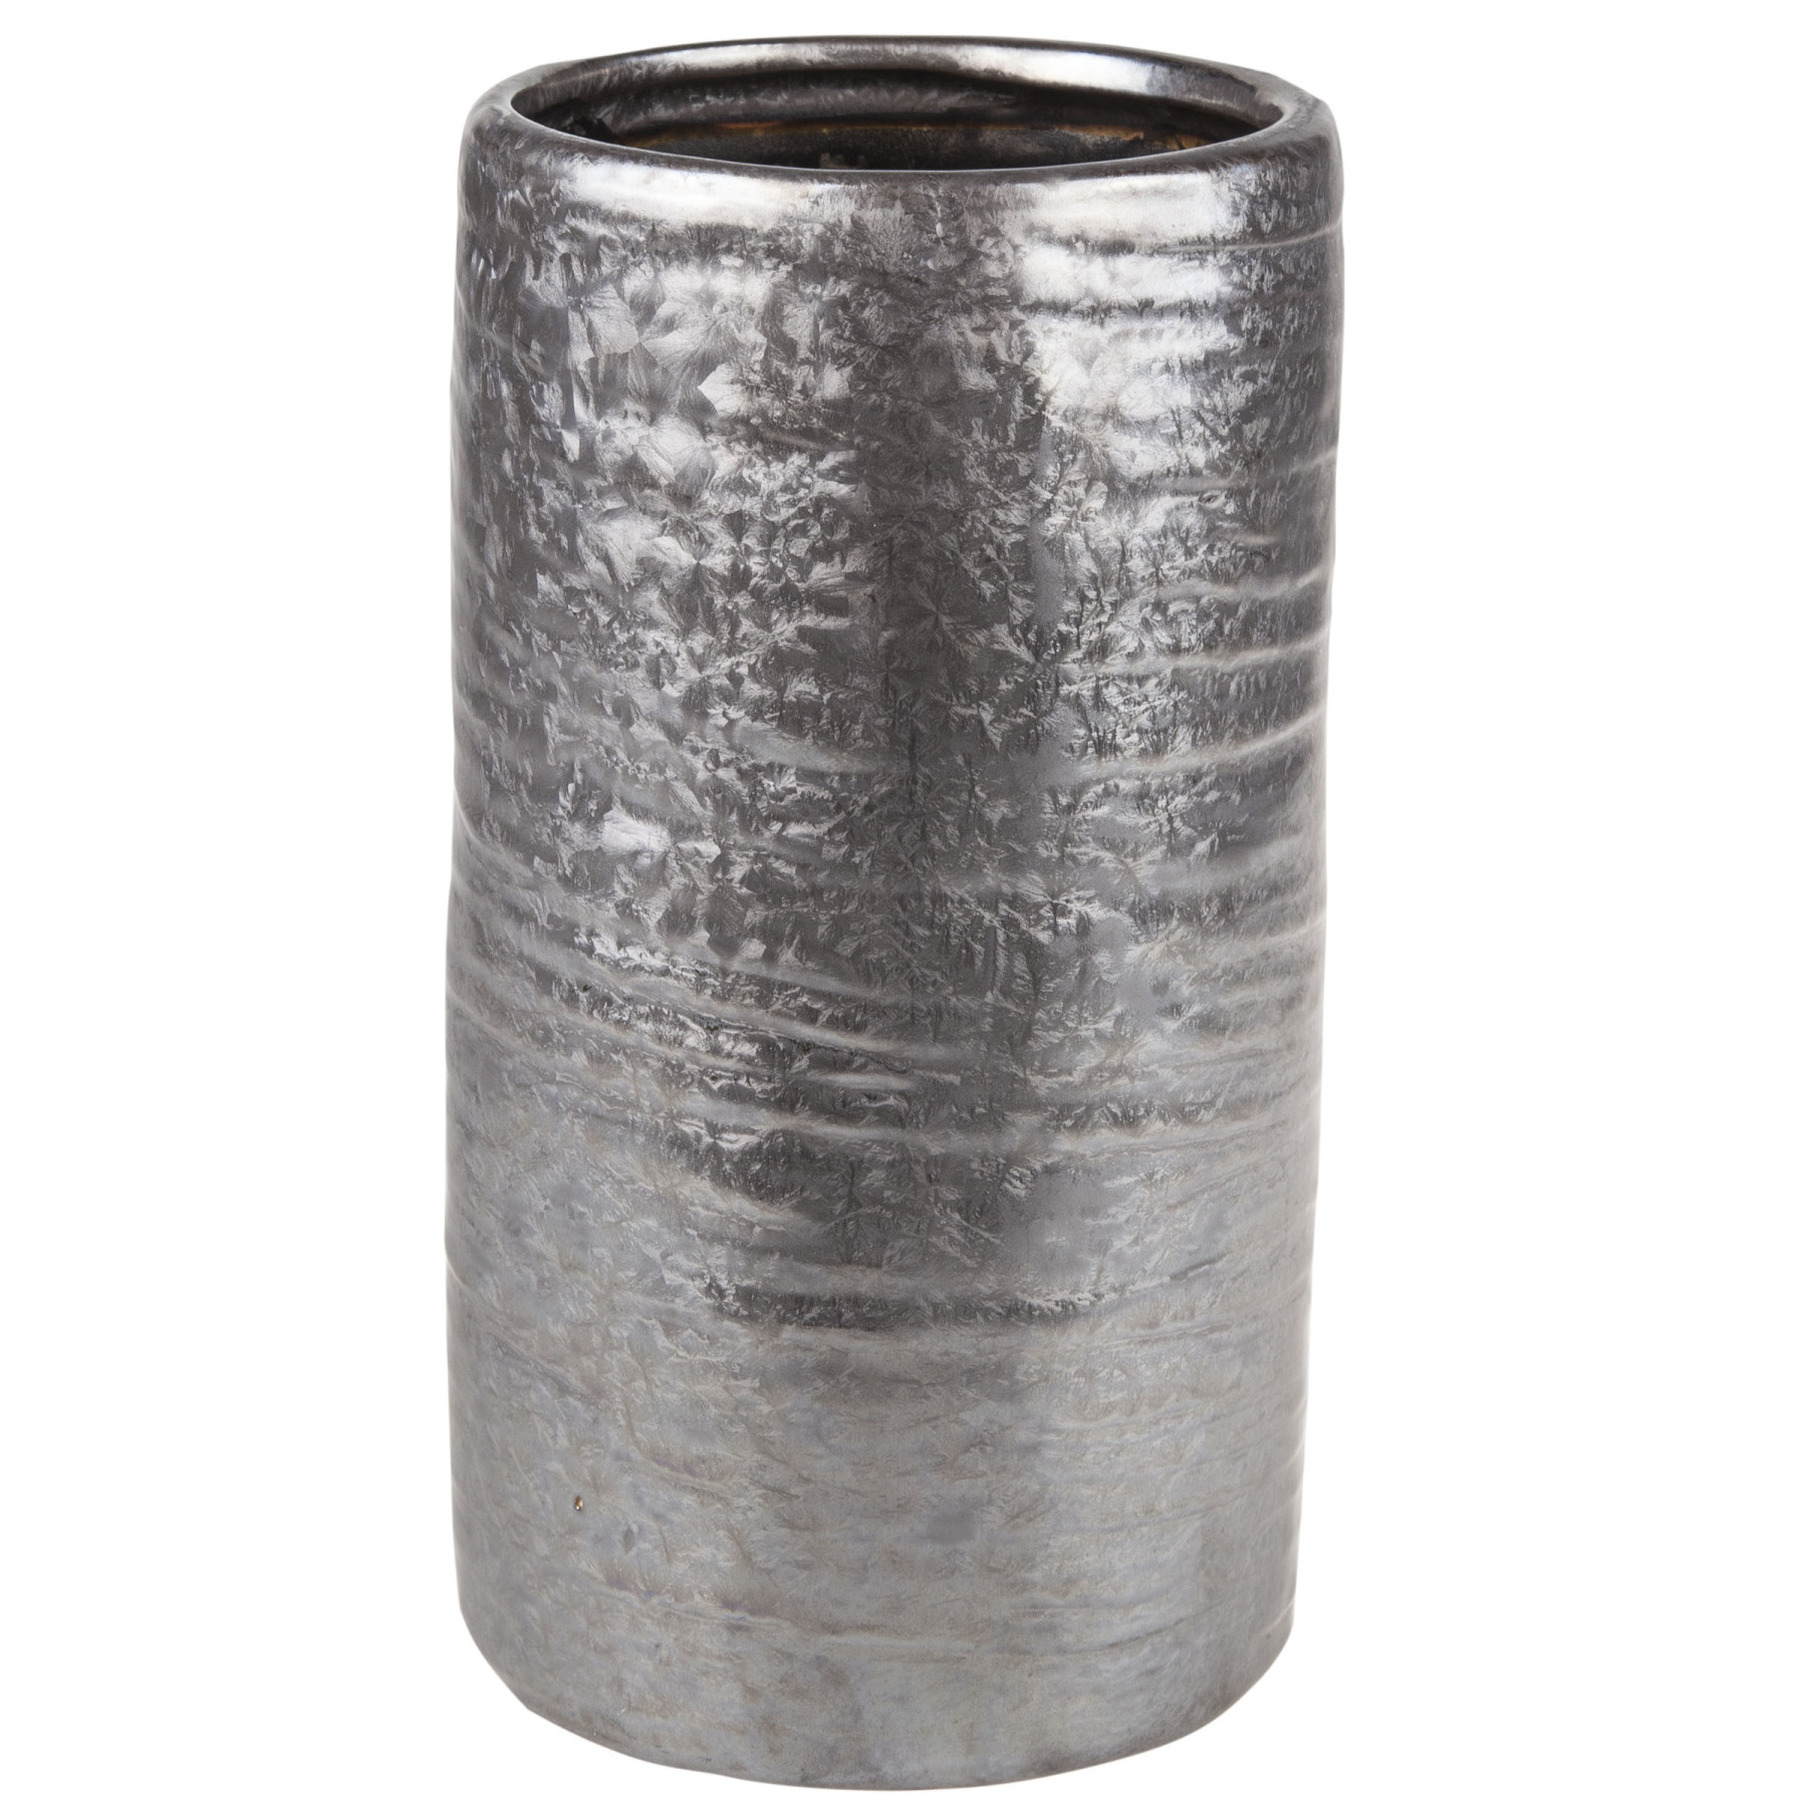 Cilinder vaas keramiek zilver/grijs 12 x 22 cm